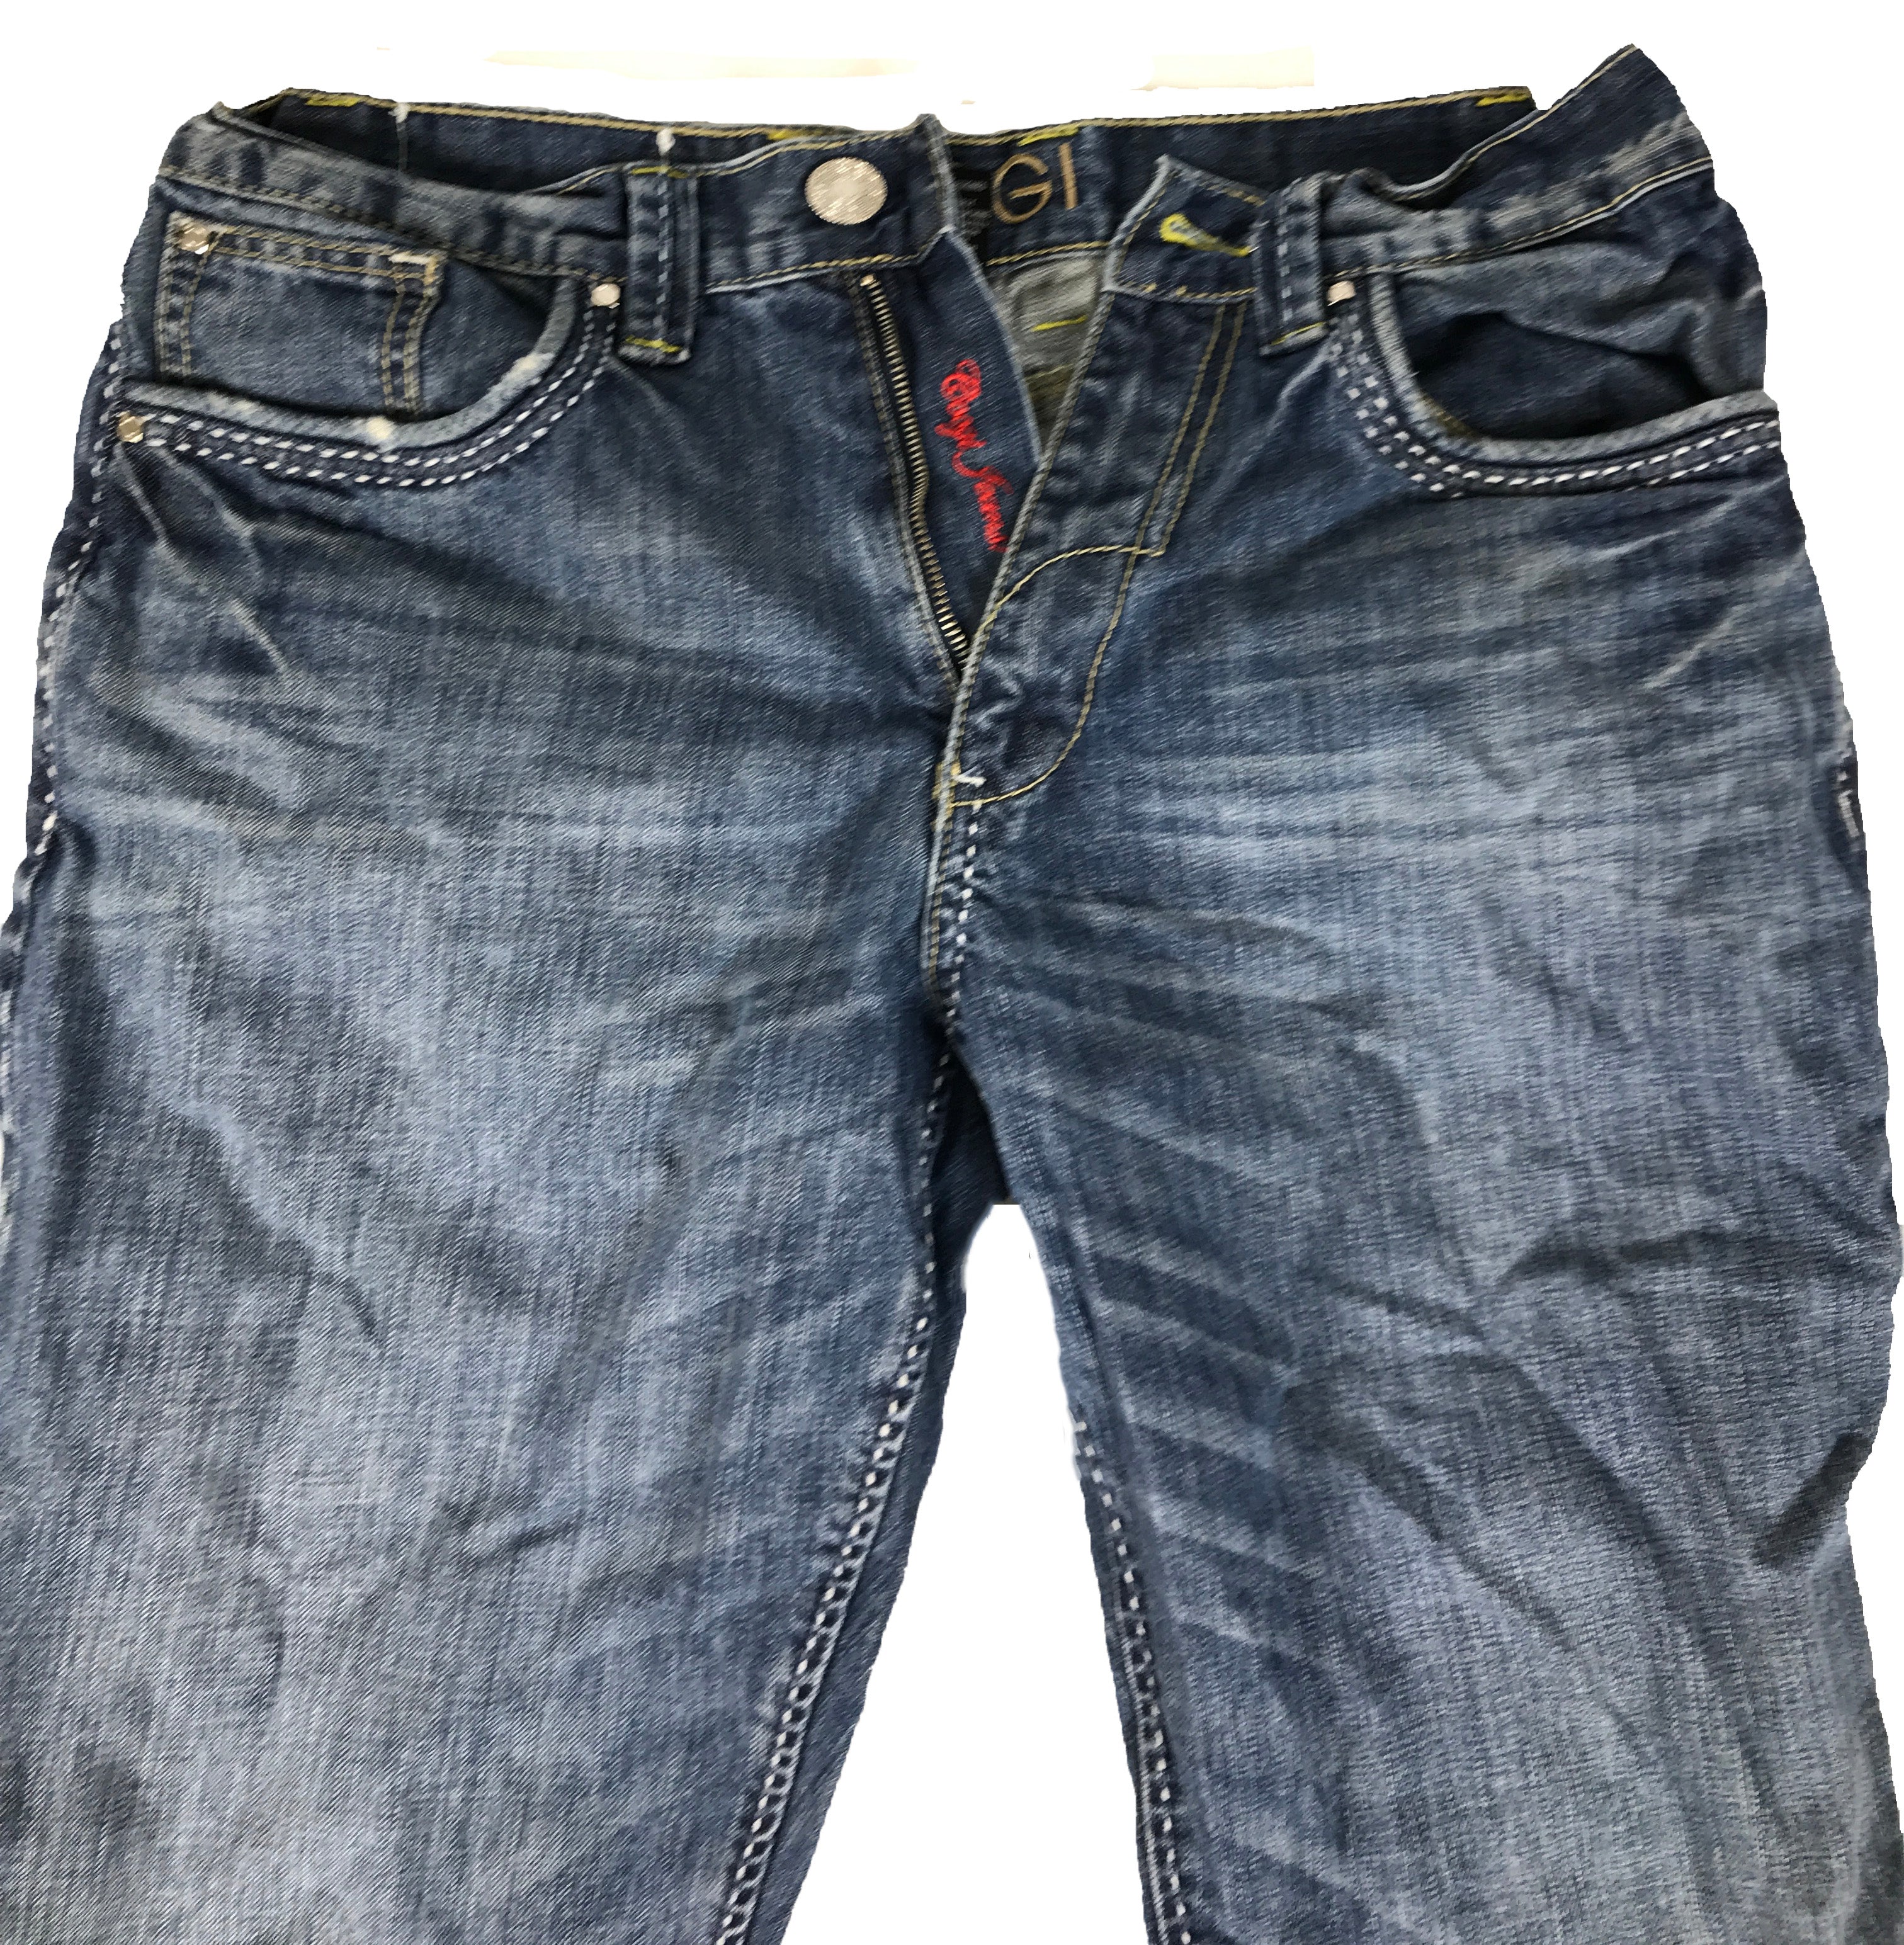 Coogi Men's Jeans Size 32x34